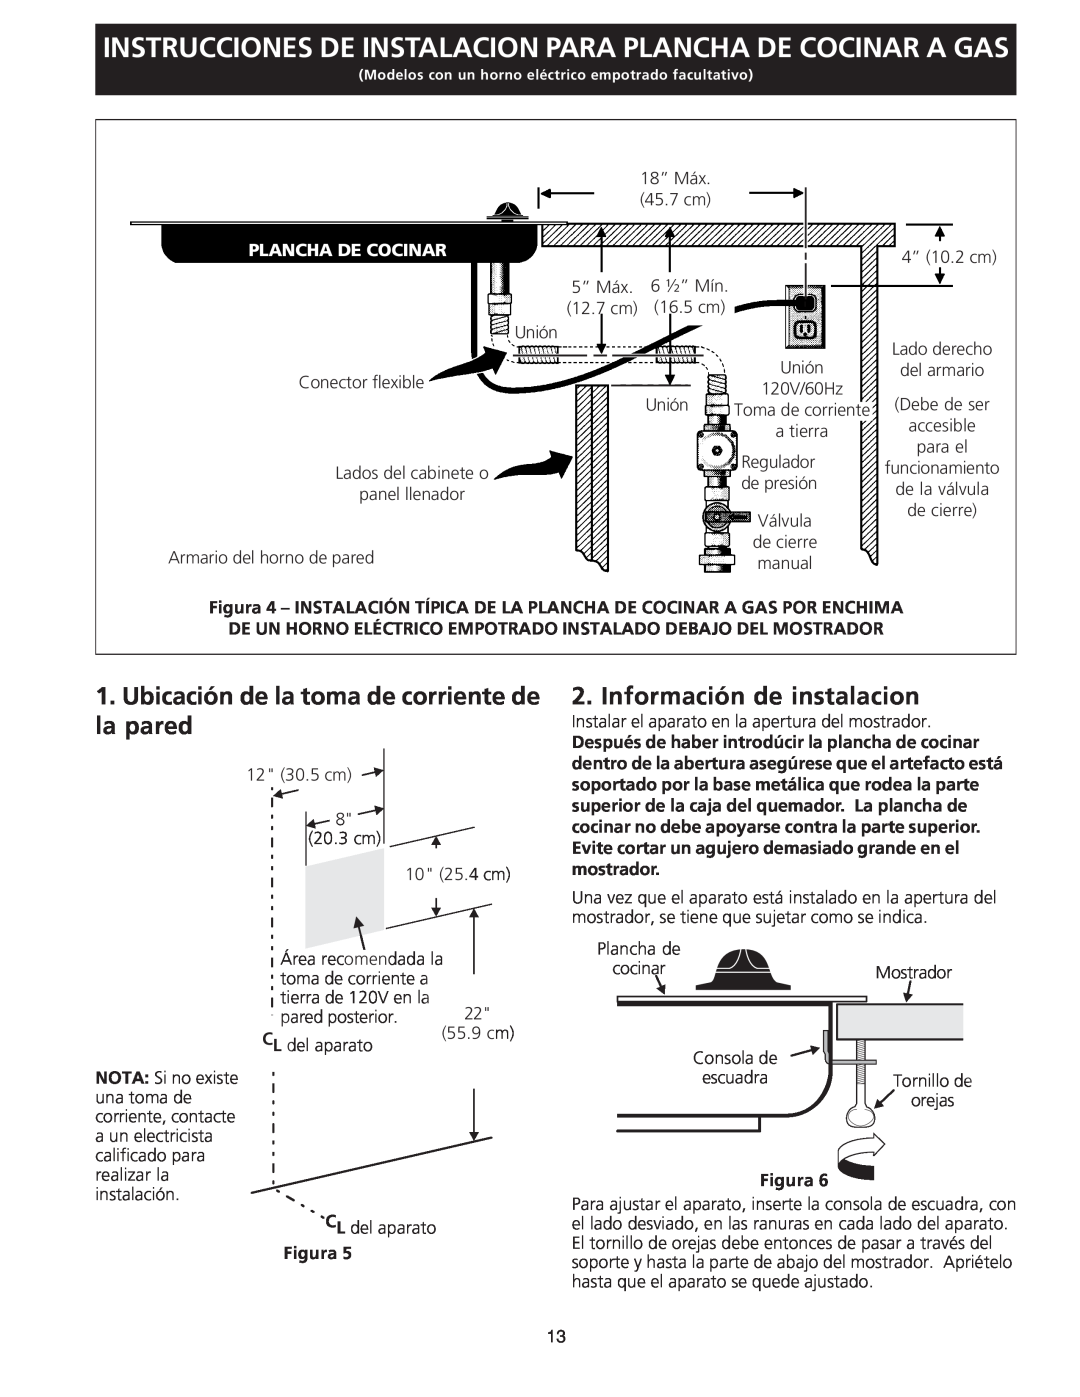 Frigidaire 318201463 (0711) Ubicación de la toma de corriente de la pared, Información de instalacion, Plancha De Cocinar 